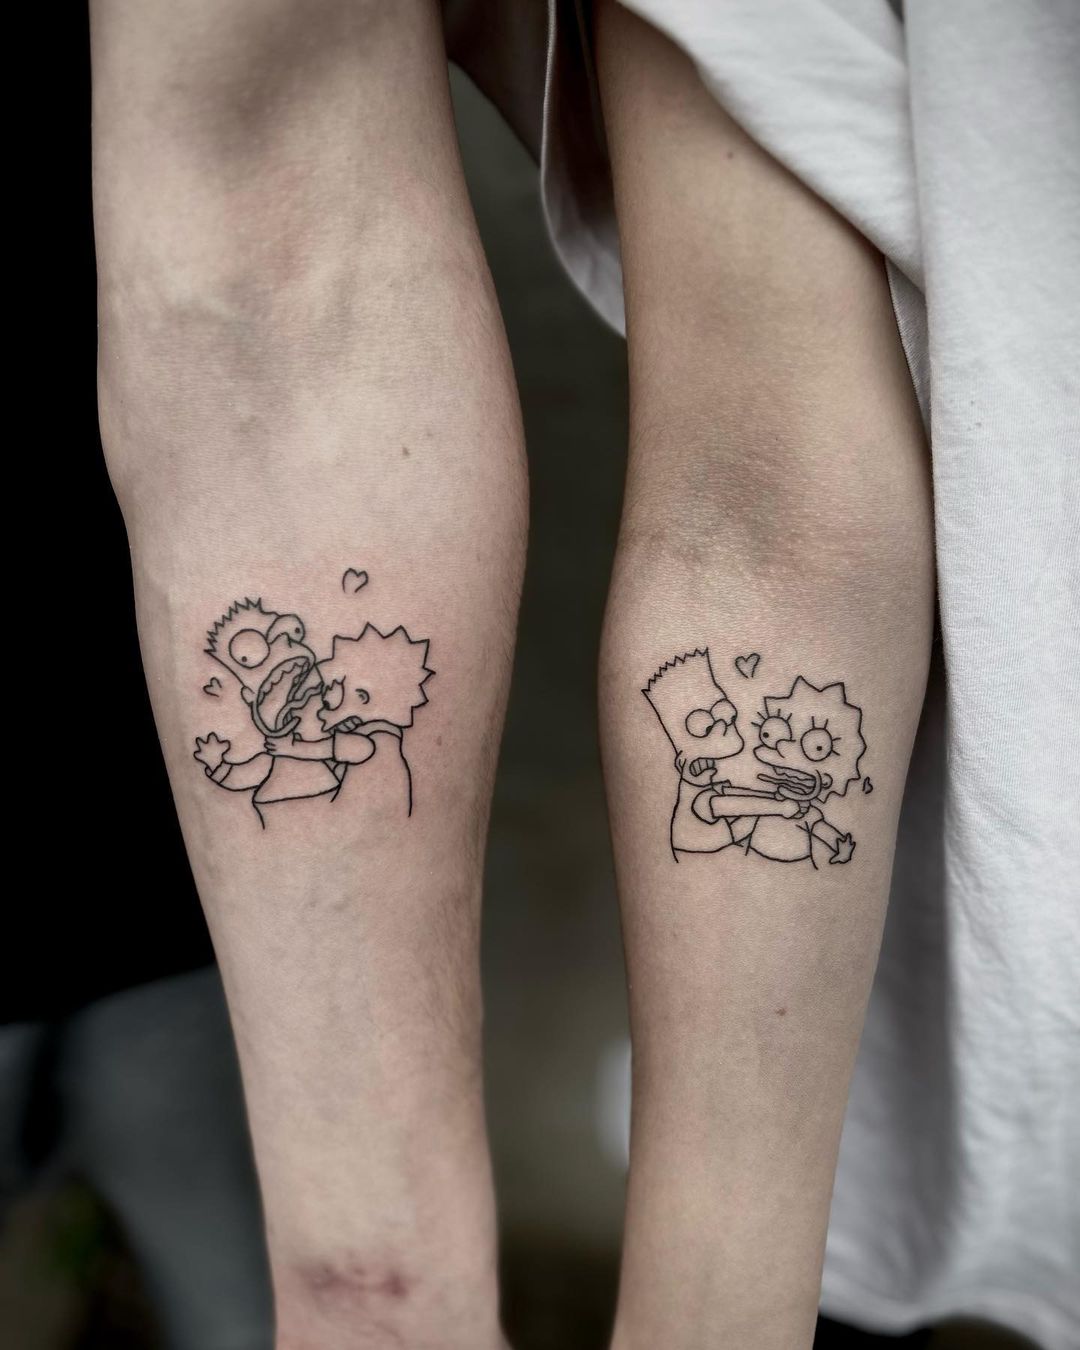 Fratelli tatuaggio Lisa e Bart Simpson